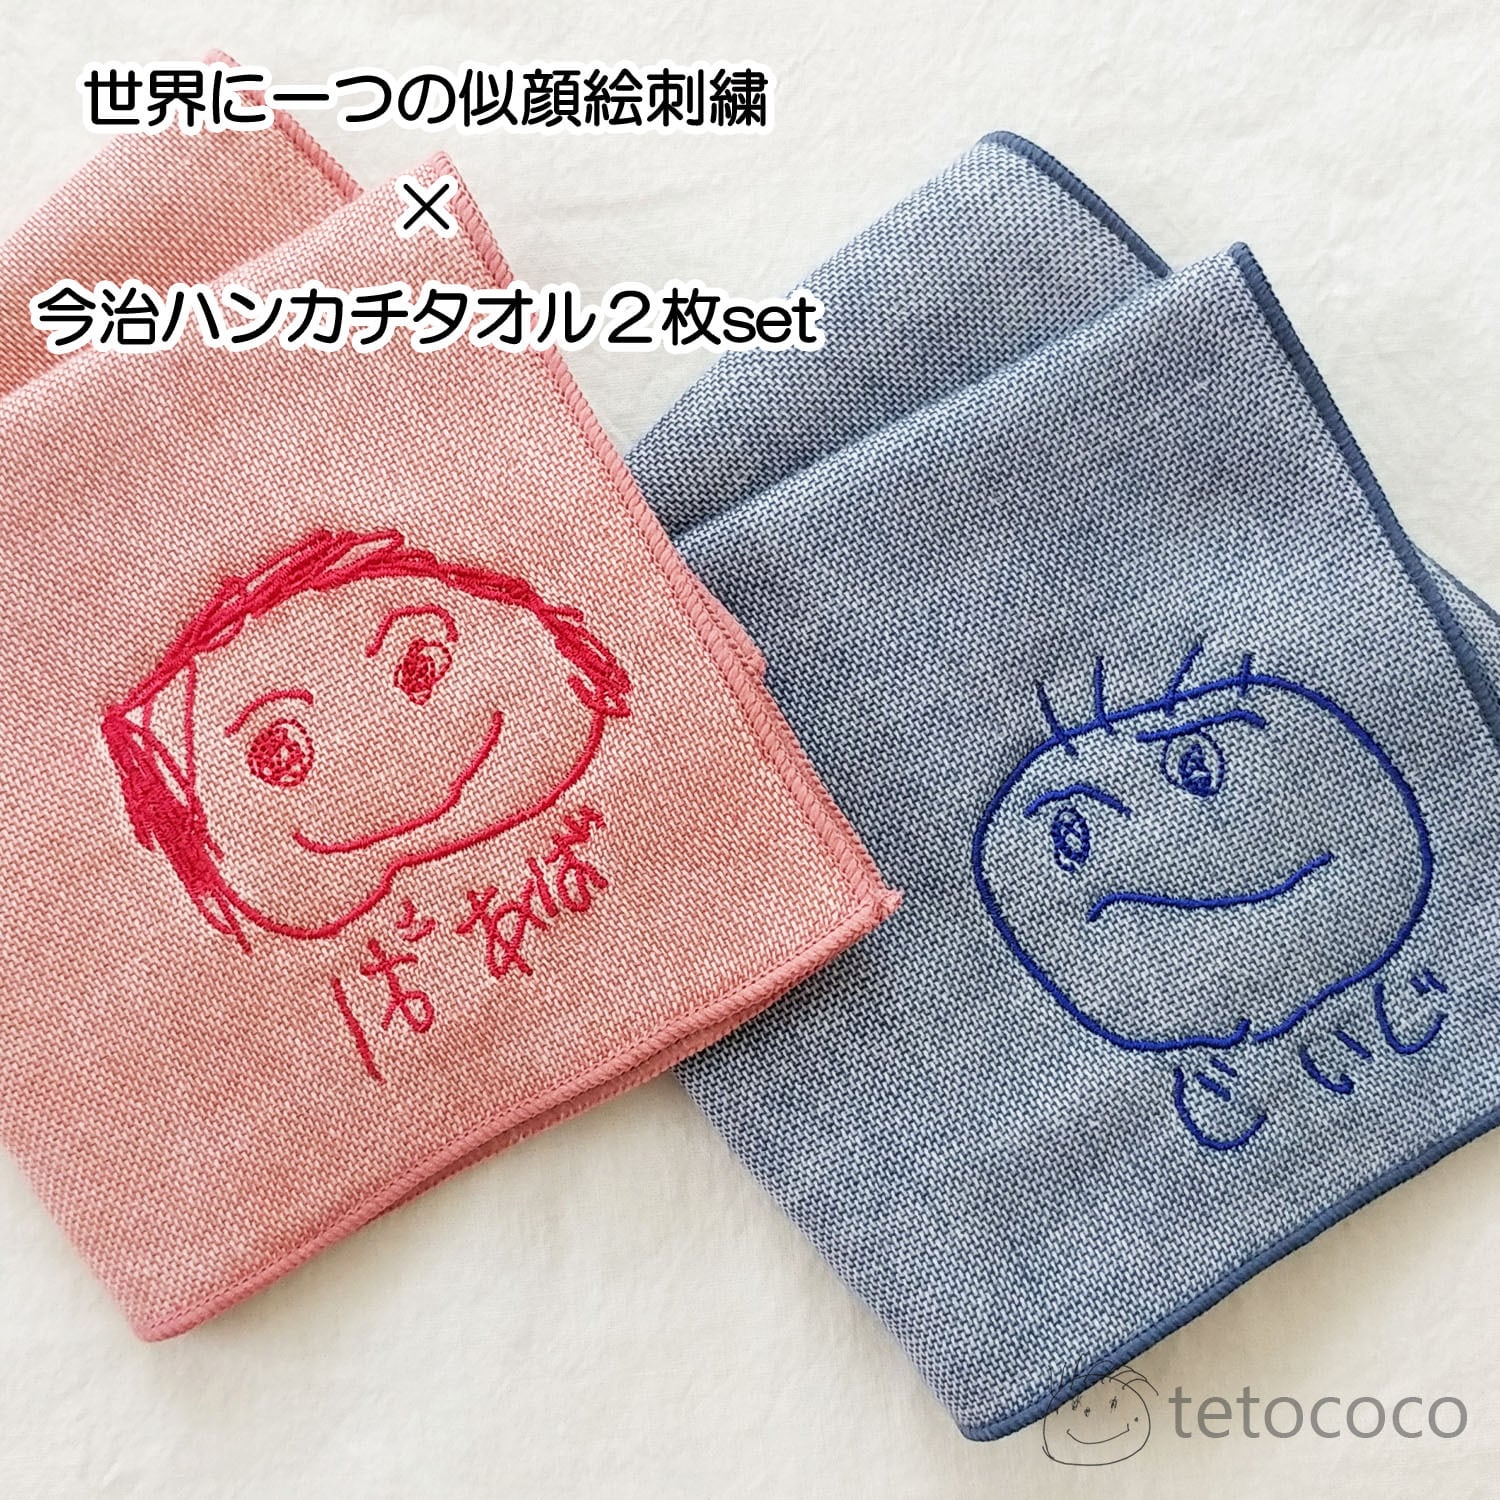 世界に一つの似顔絵刺繍with今治ハンカチタオル(ペアセット) | tetococo powered by BASE